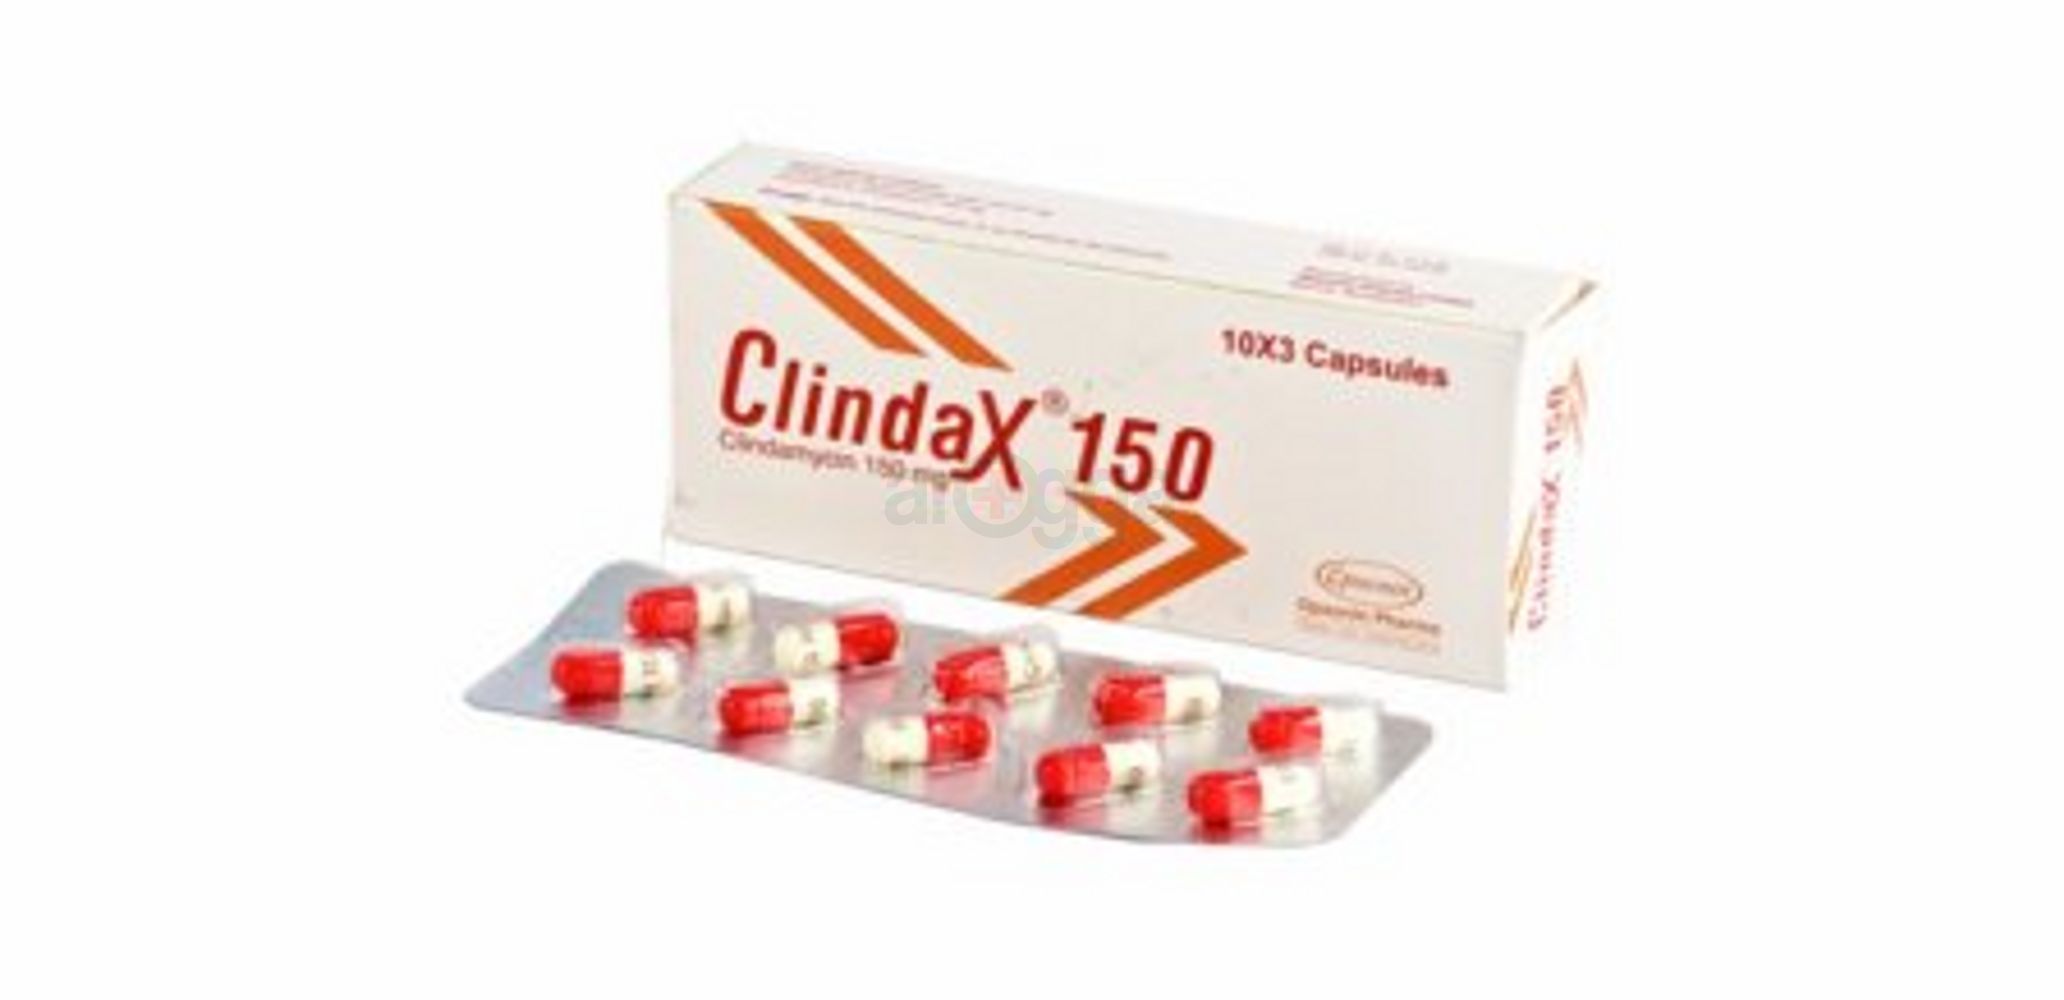 Clindax